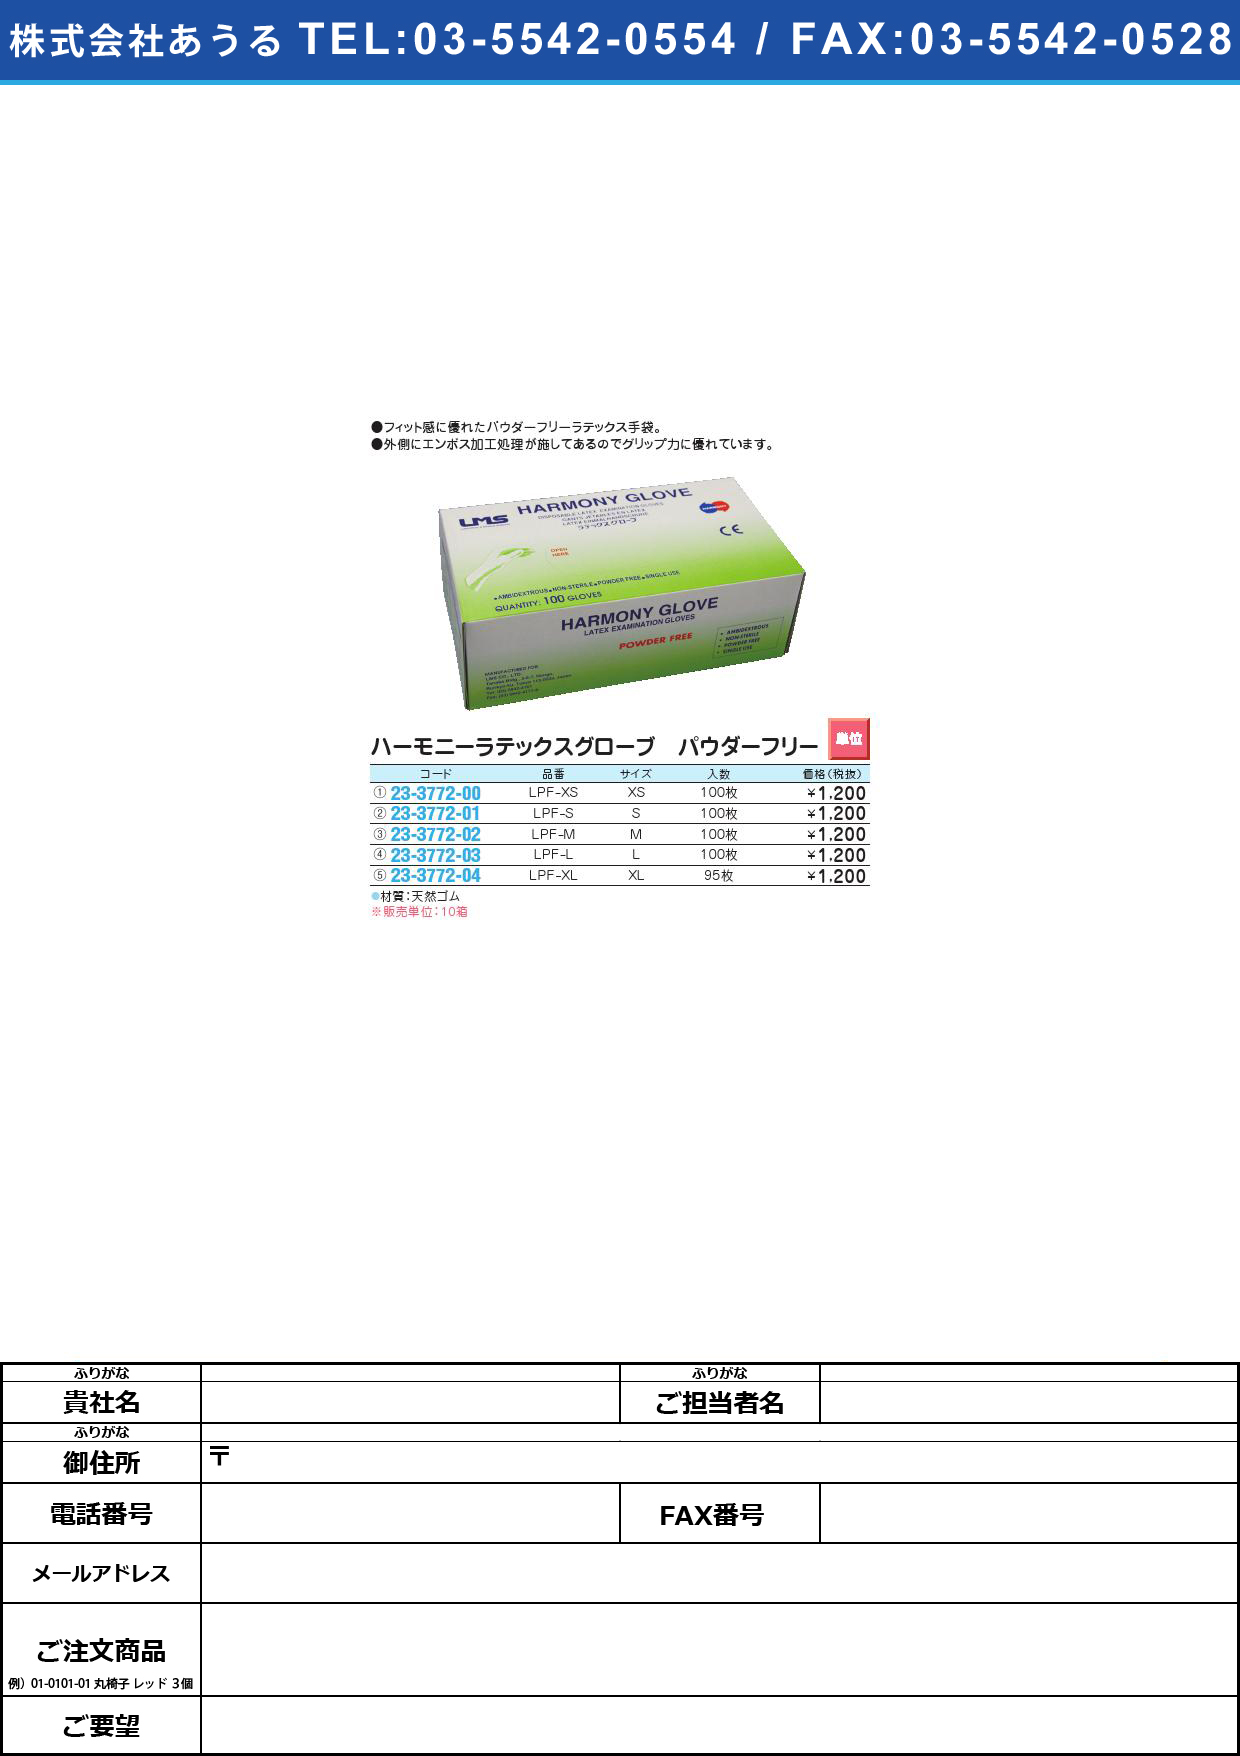 (23-3772-00)ハーモニーラテックスグローブＰＦ LPF-XS(XS)100ﾏｲｲﾘﾊｰﾓﾆｰﾗﾃｯｸｽｸﾞﾛｰﾌﾞPF(23-3772-00)【10箱単位】【2013年カタログ商品】